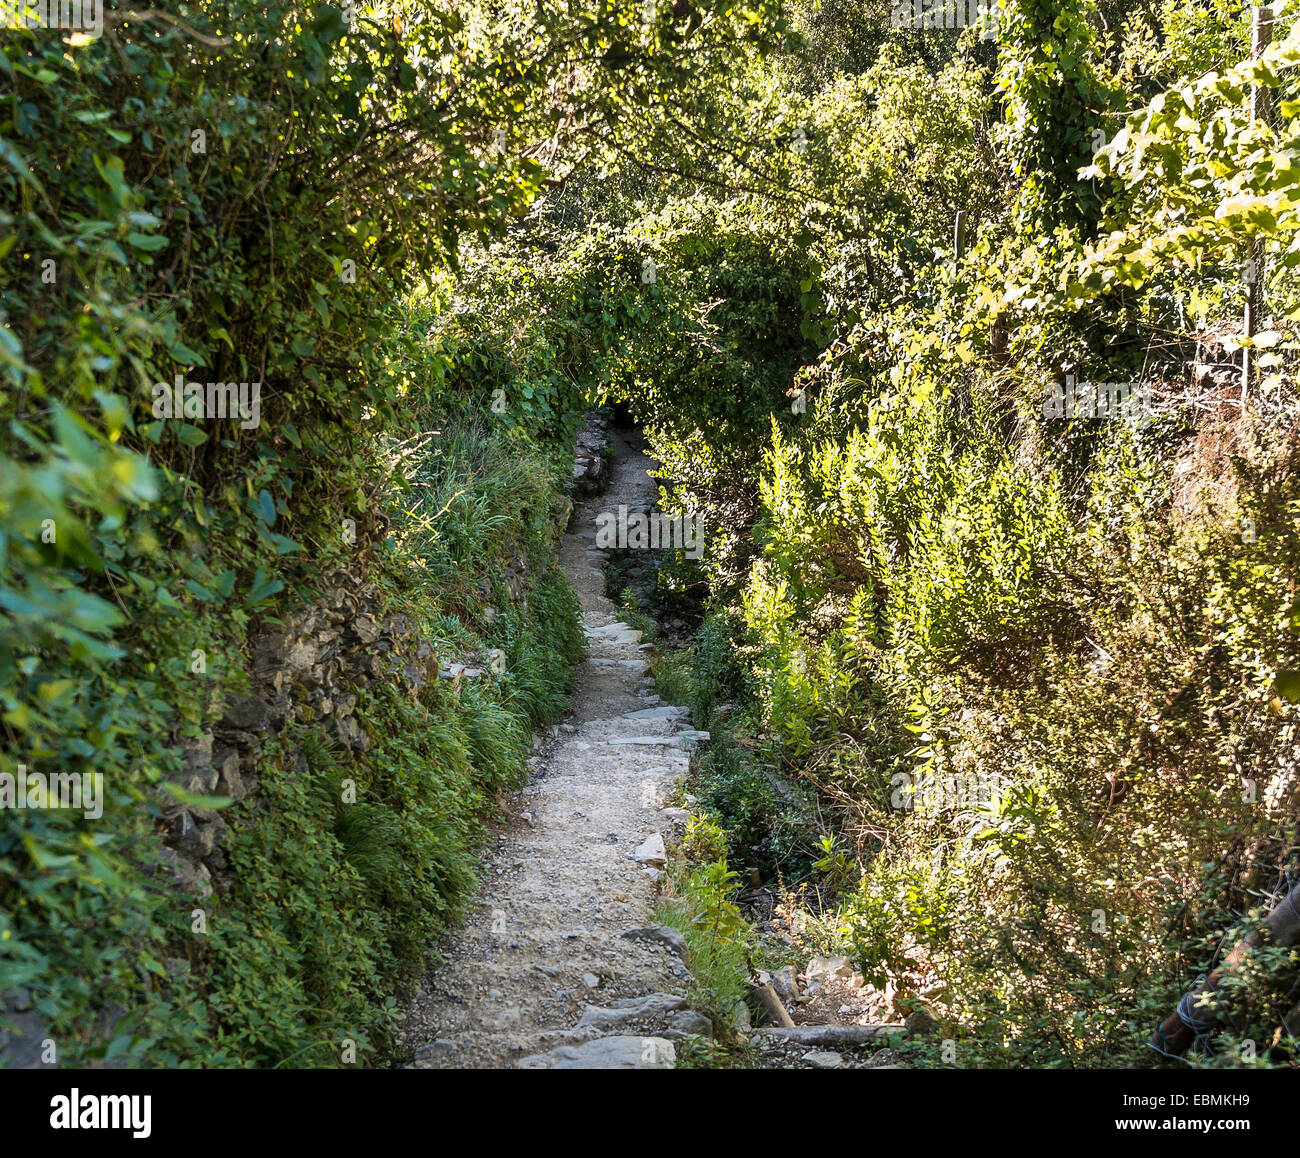 Trail entouré de plantes, la végétation tunnel, Cinque Terre, La Spezia, ligurie, italie Banque D'Images